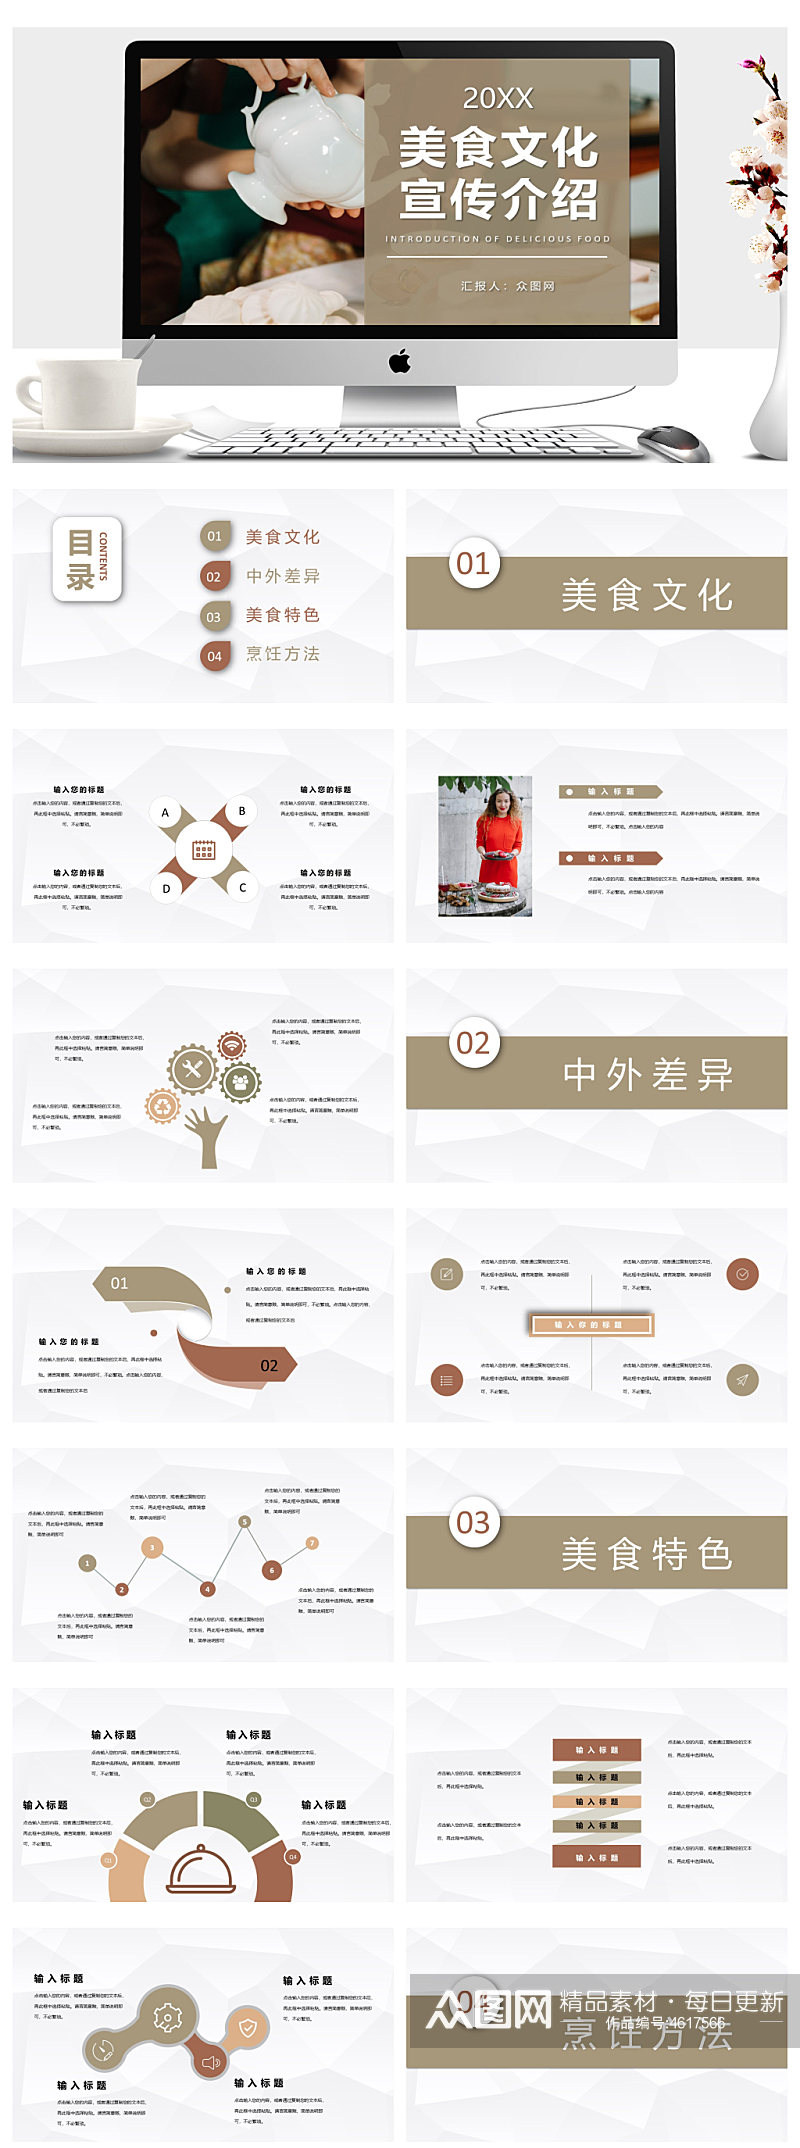 中西方美食文化宣传介绍学习ppt素材